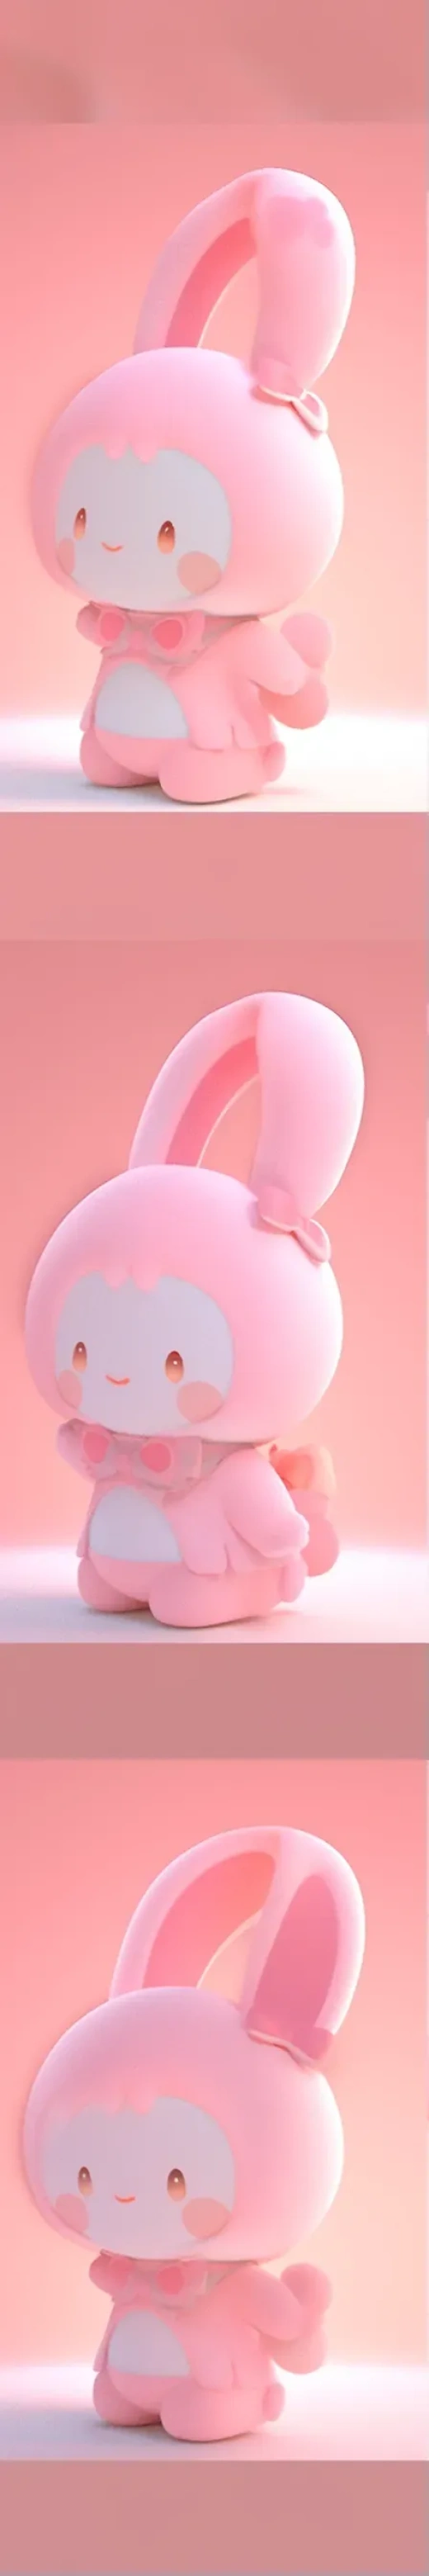 可爱兔子玩具的三视图：Chibi风格与糖果色调